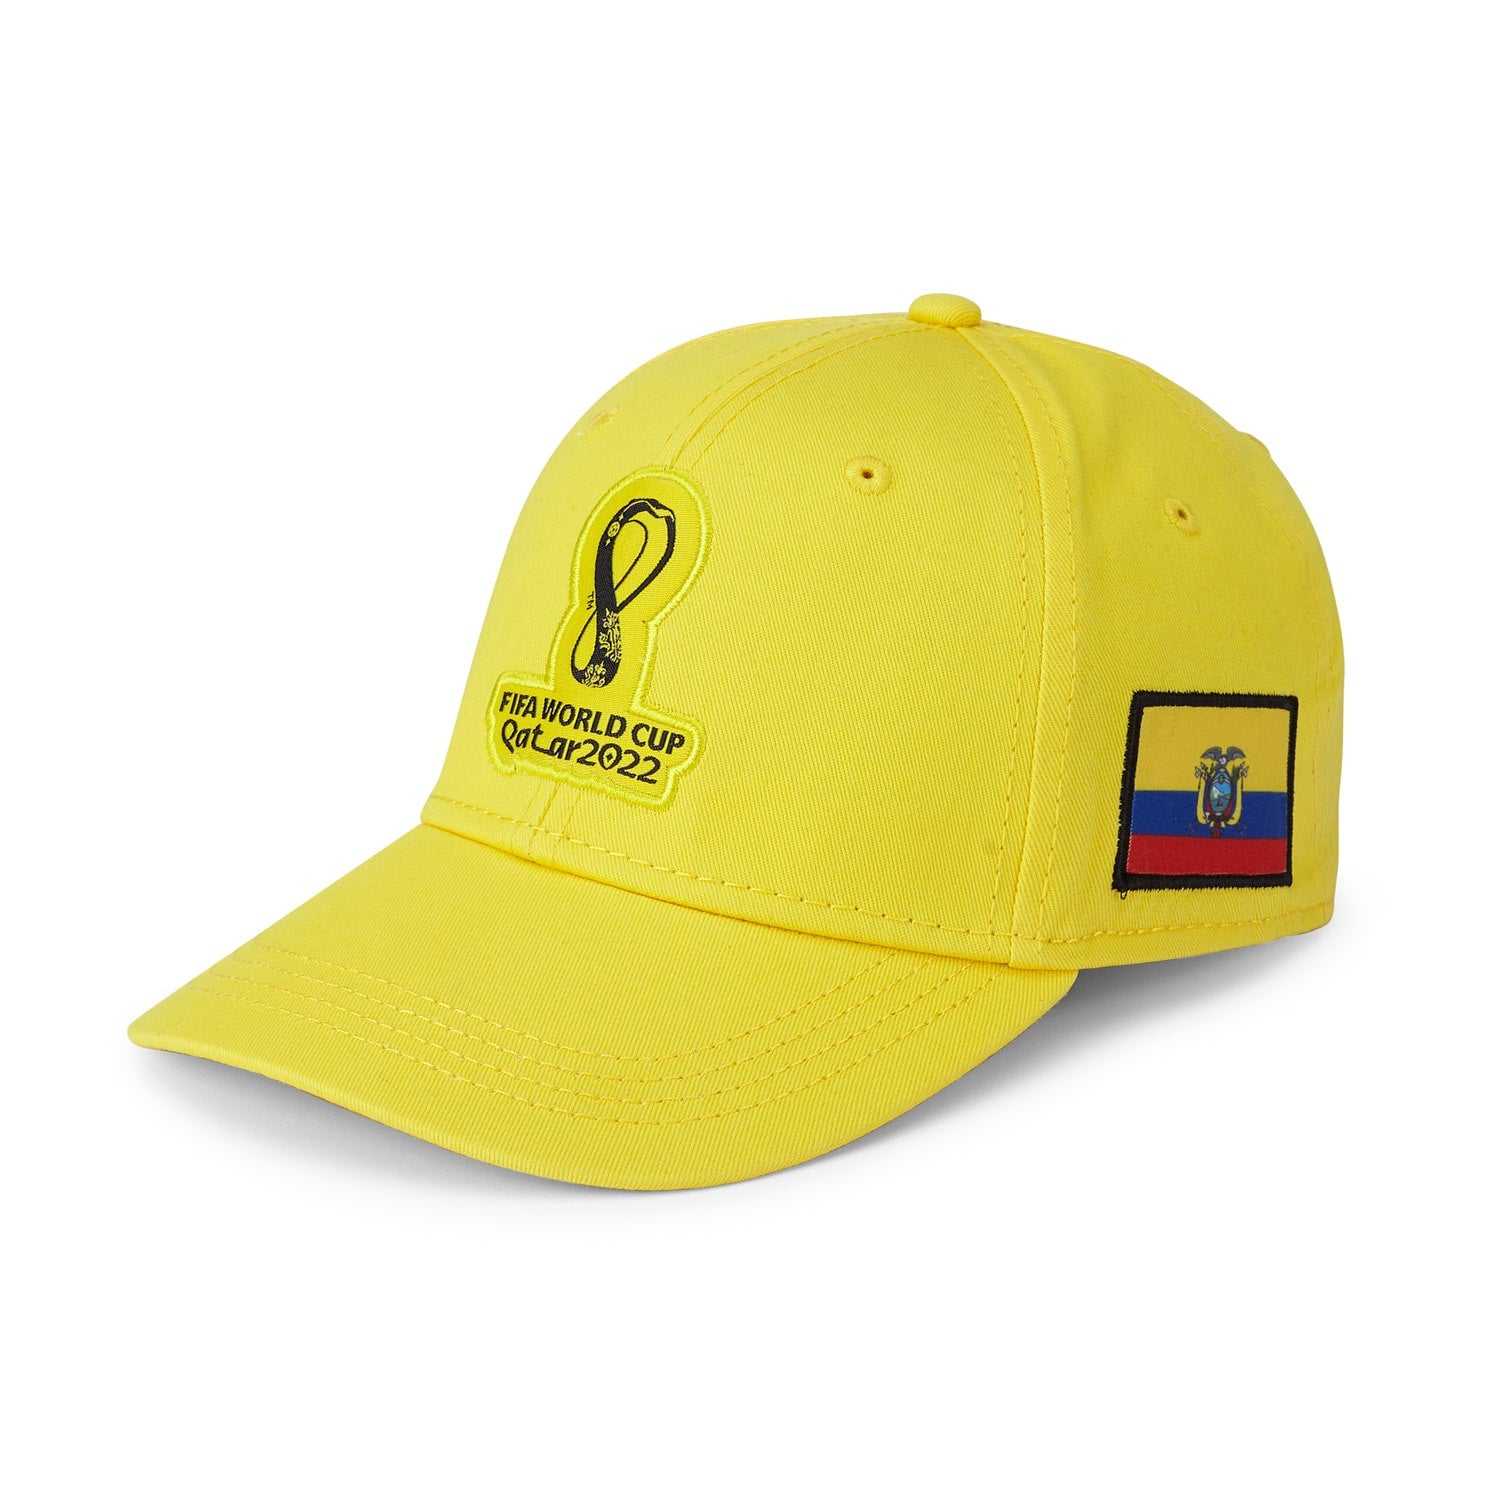 2022 World Cup Ecuador Yellow Cap - Men's